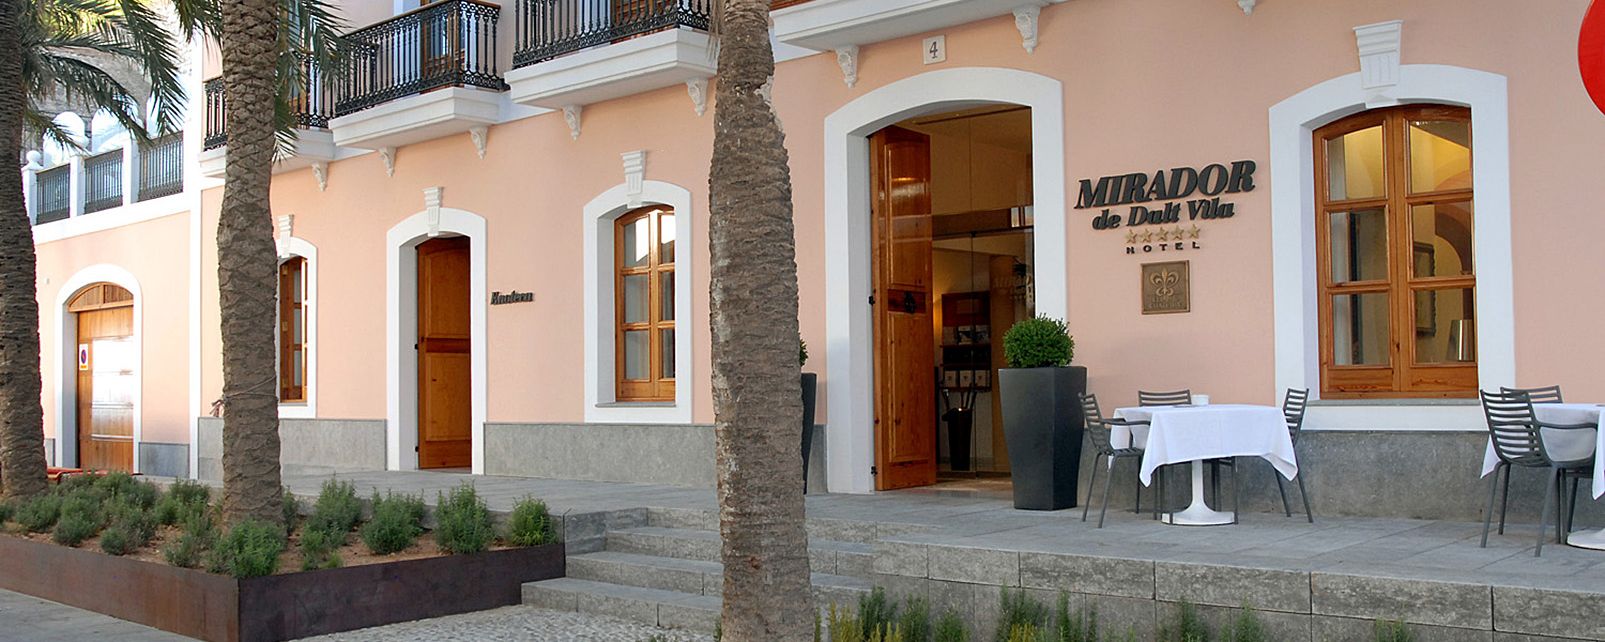 Hôtel Mirador de Dalt Vila 